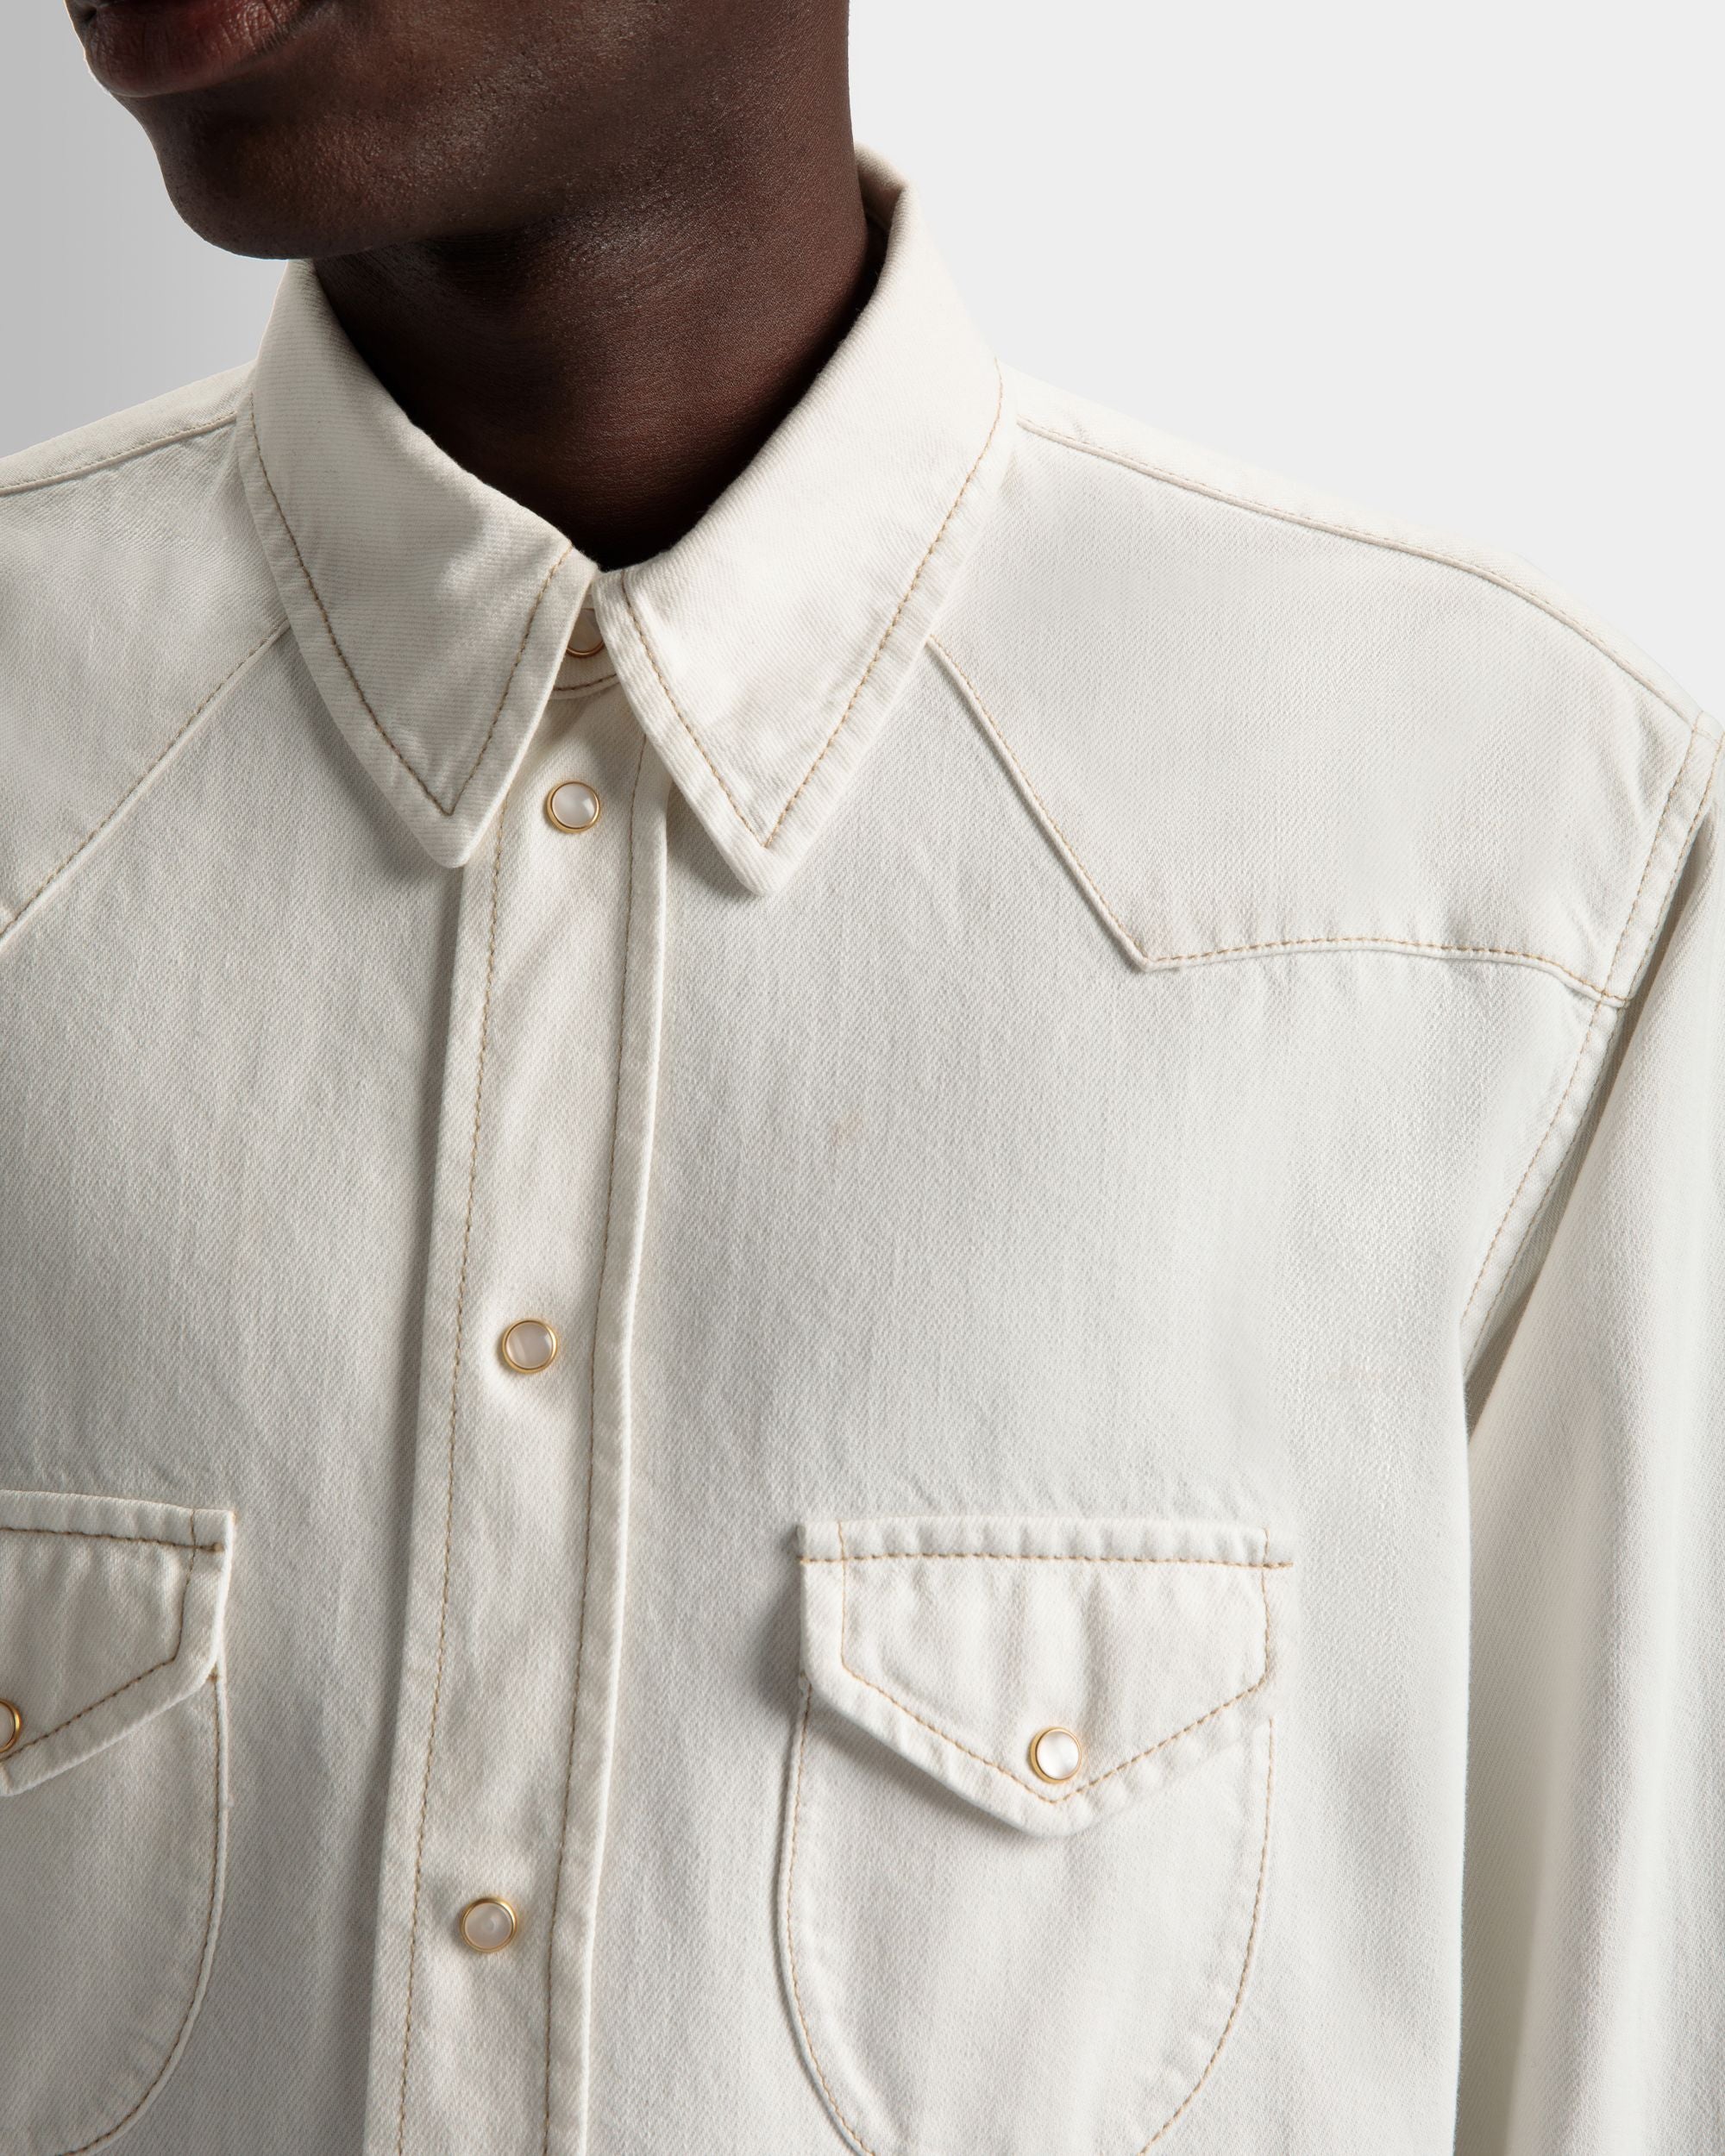 Hemd aus gebleichtem Denim | Herrenhemd | Baumwolle in Elfenbein | Bally | Model getragen Detail